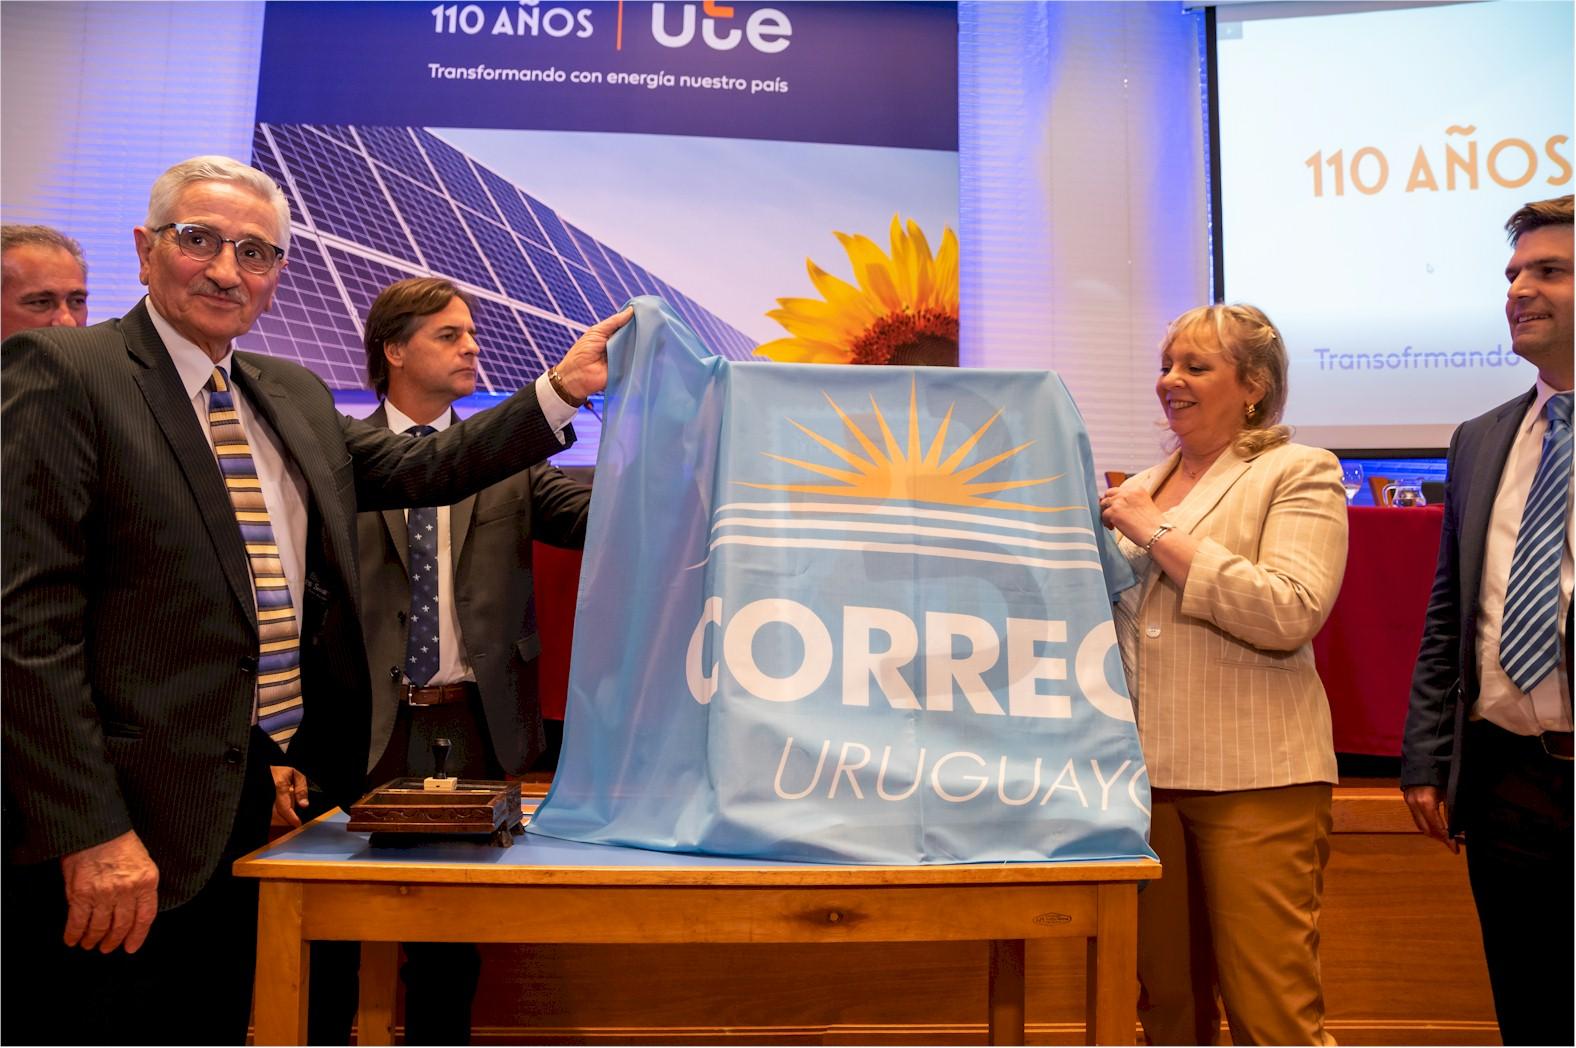 El presidente junto a autoridades de UTE y del Correo descubren el sello alusivo al aniversario de UTE